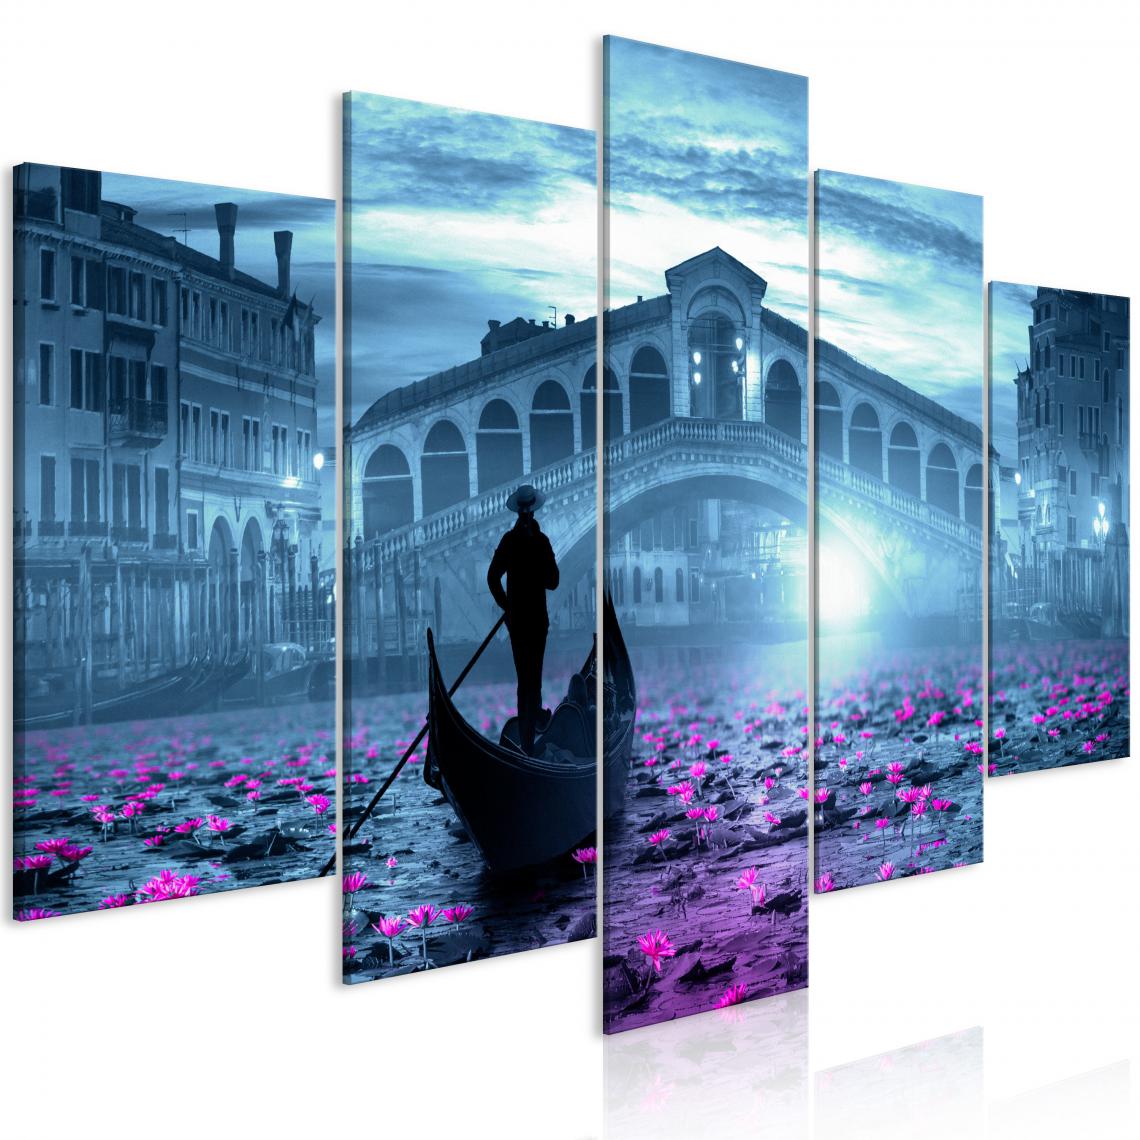 Decoshop26 - Tableau sur toile en 5 panneaux décoration murale image imprimée cadre en bois à suspendre Venise magique (5 Parties) Large Bleu 200x100 cm 11_0008320 - Tableaux, peintures